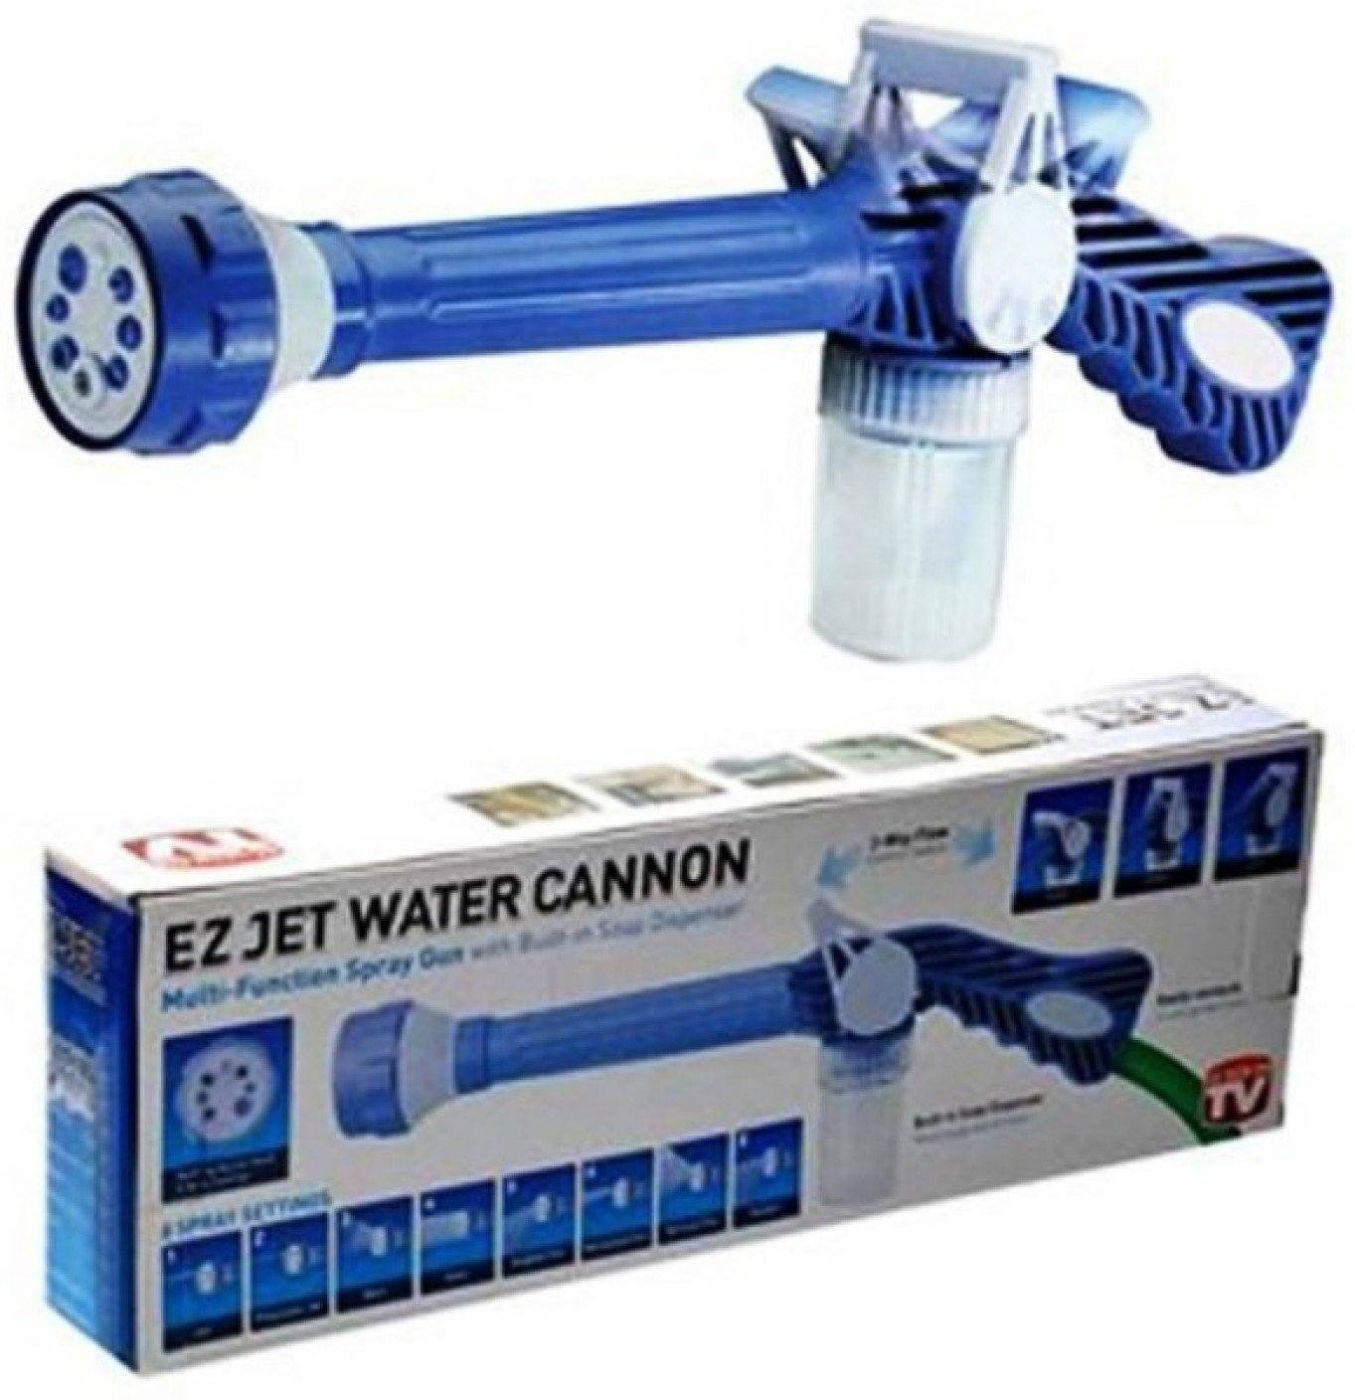 Насадка-распылитель на шланг с бочком для шампуня Ez jet water Cannon (Из Джет Ватер Канон)